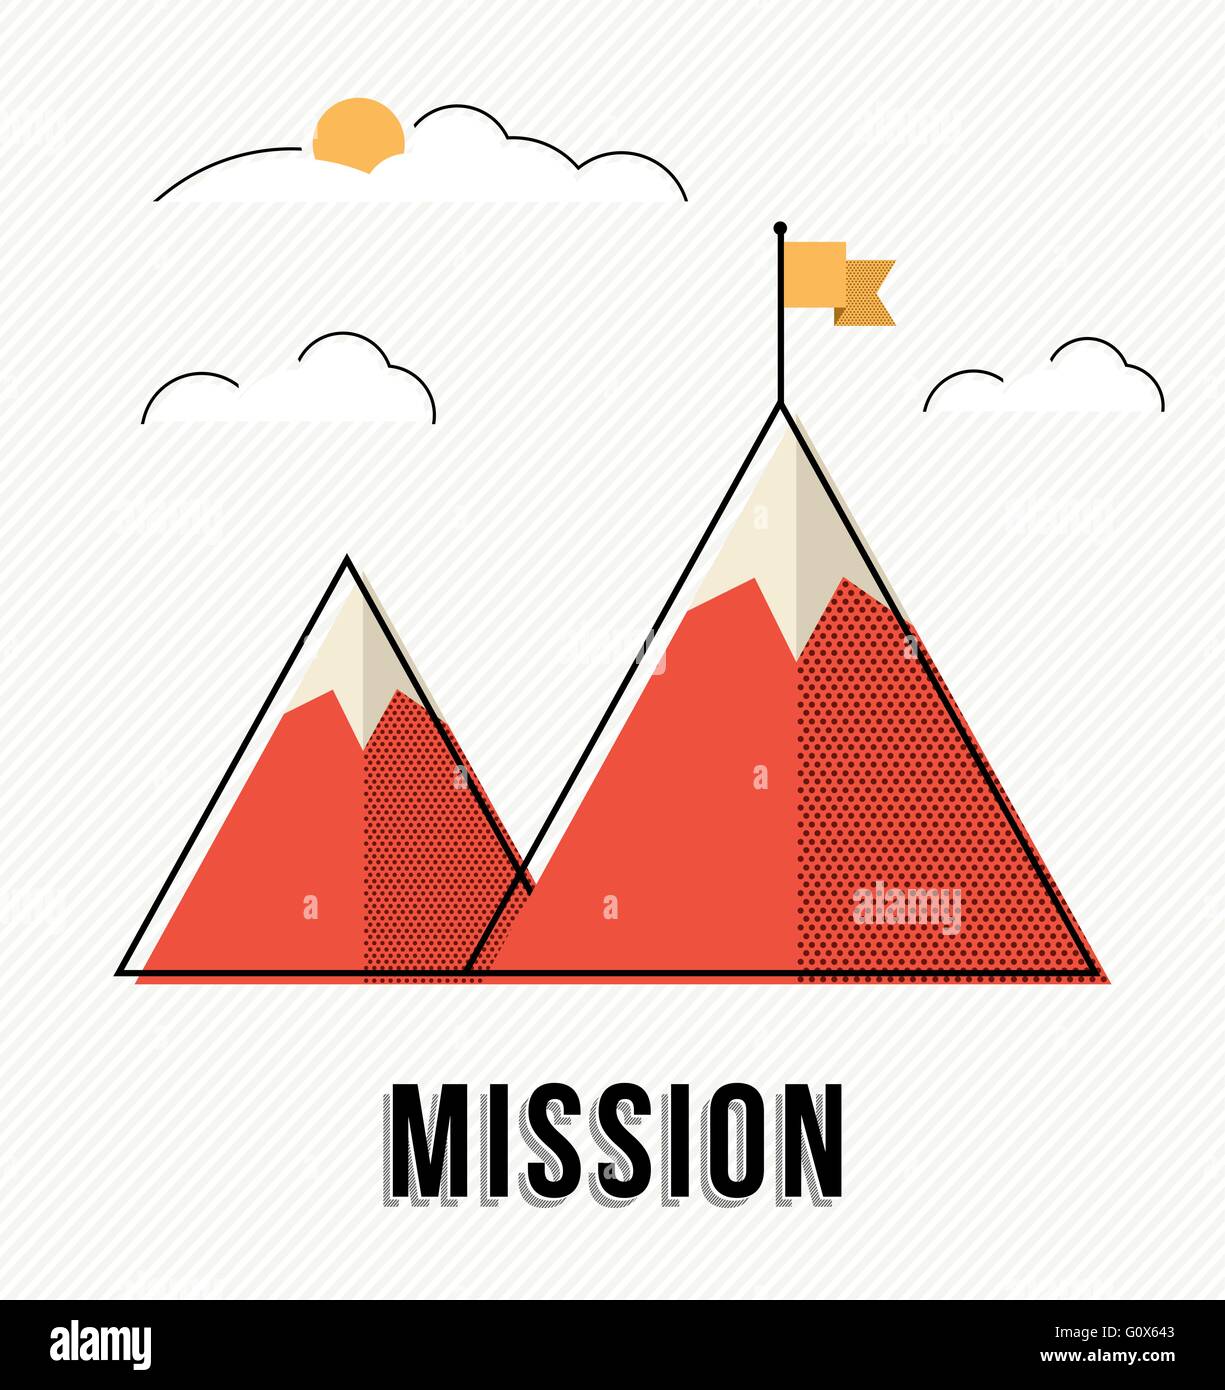 L'ENTREPRISE Mission Concept illustration de montagne avec drapeau, montée vers le succès dans le lieu de travail. Vecteur EPS10. Illustration de Vecteur